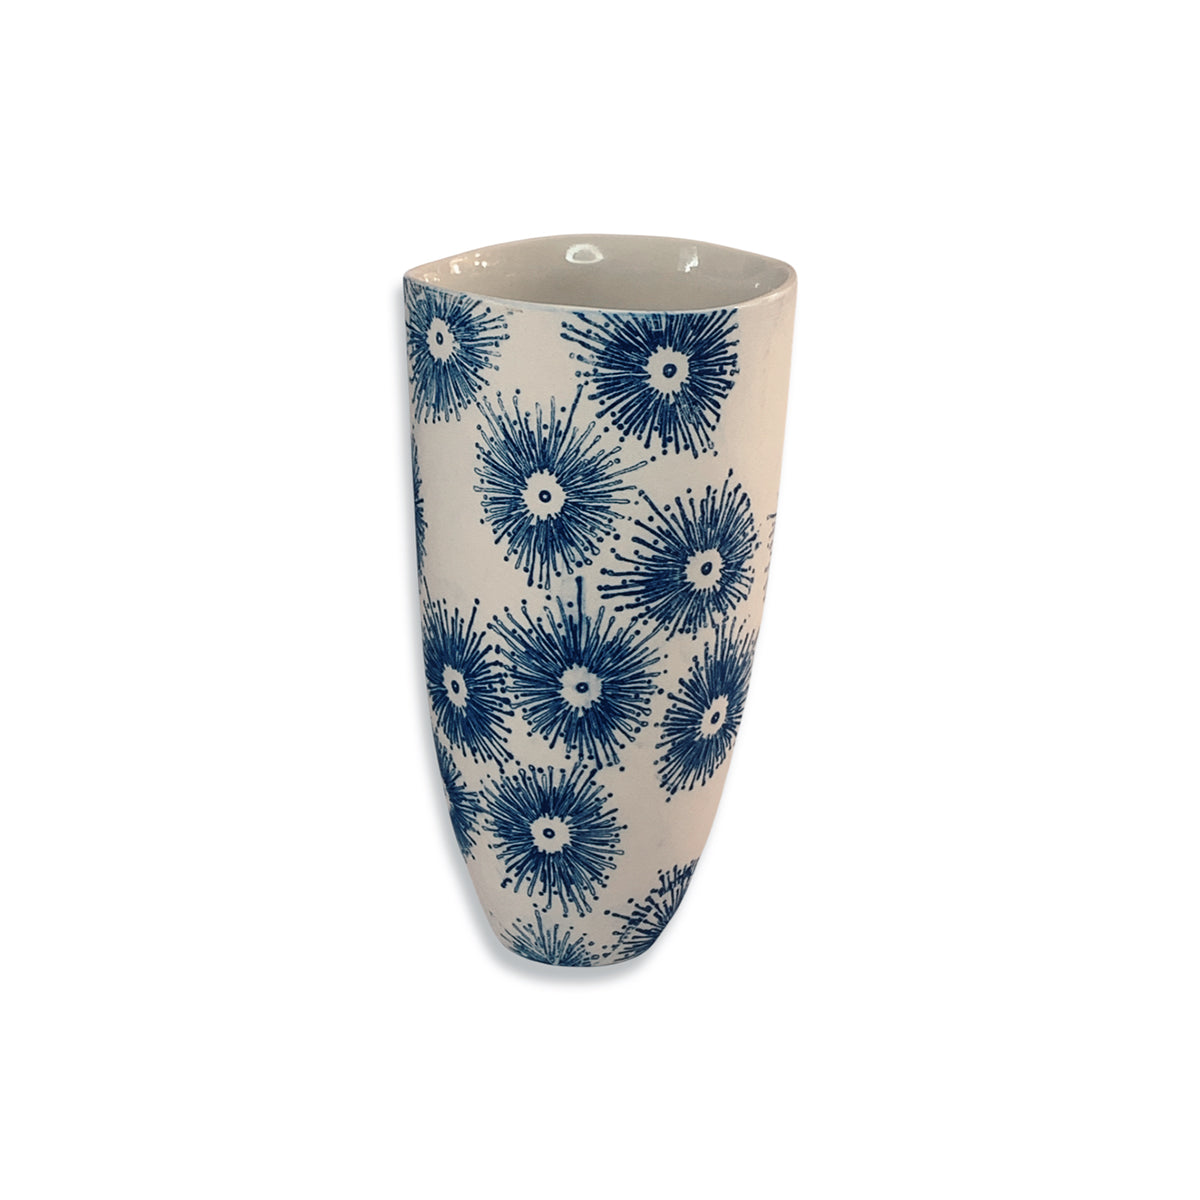 Floral Blue Elegant Vase Small